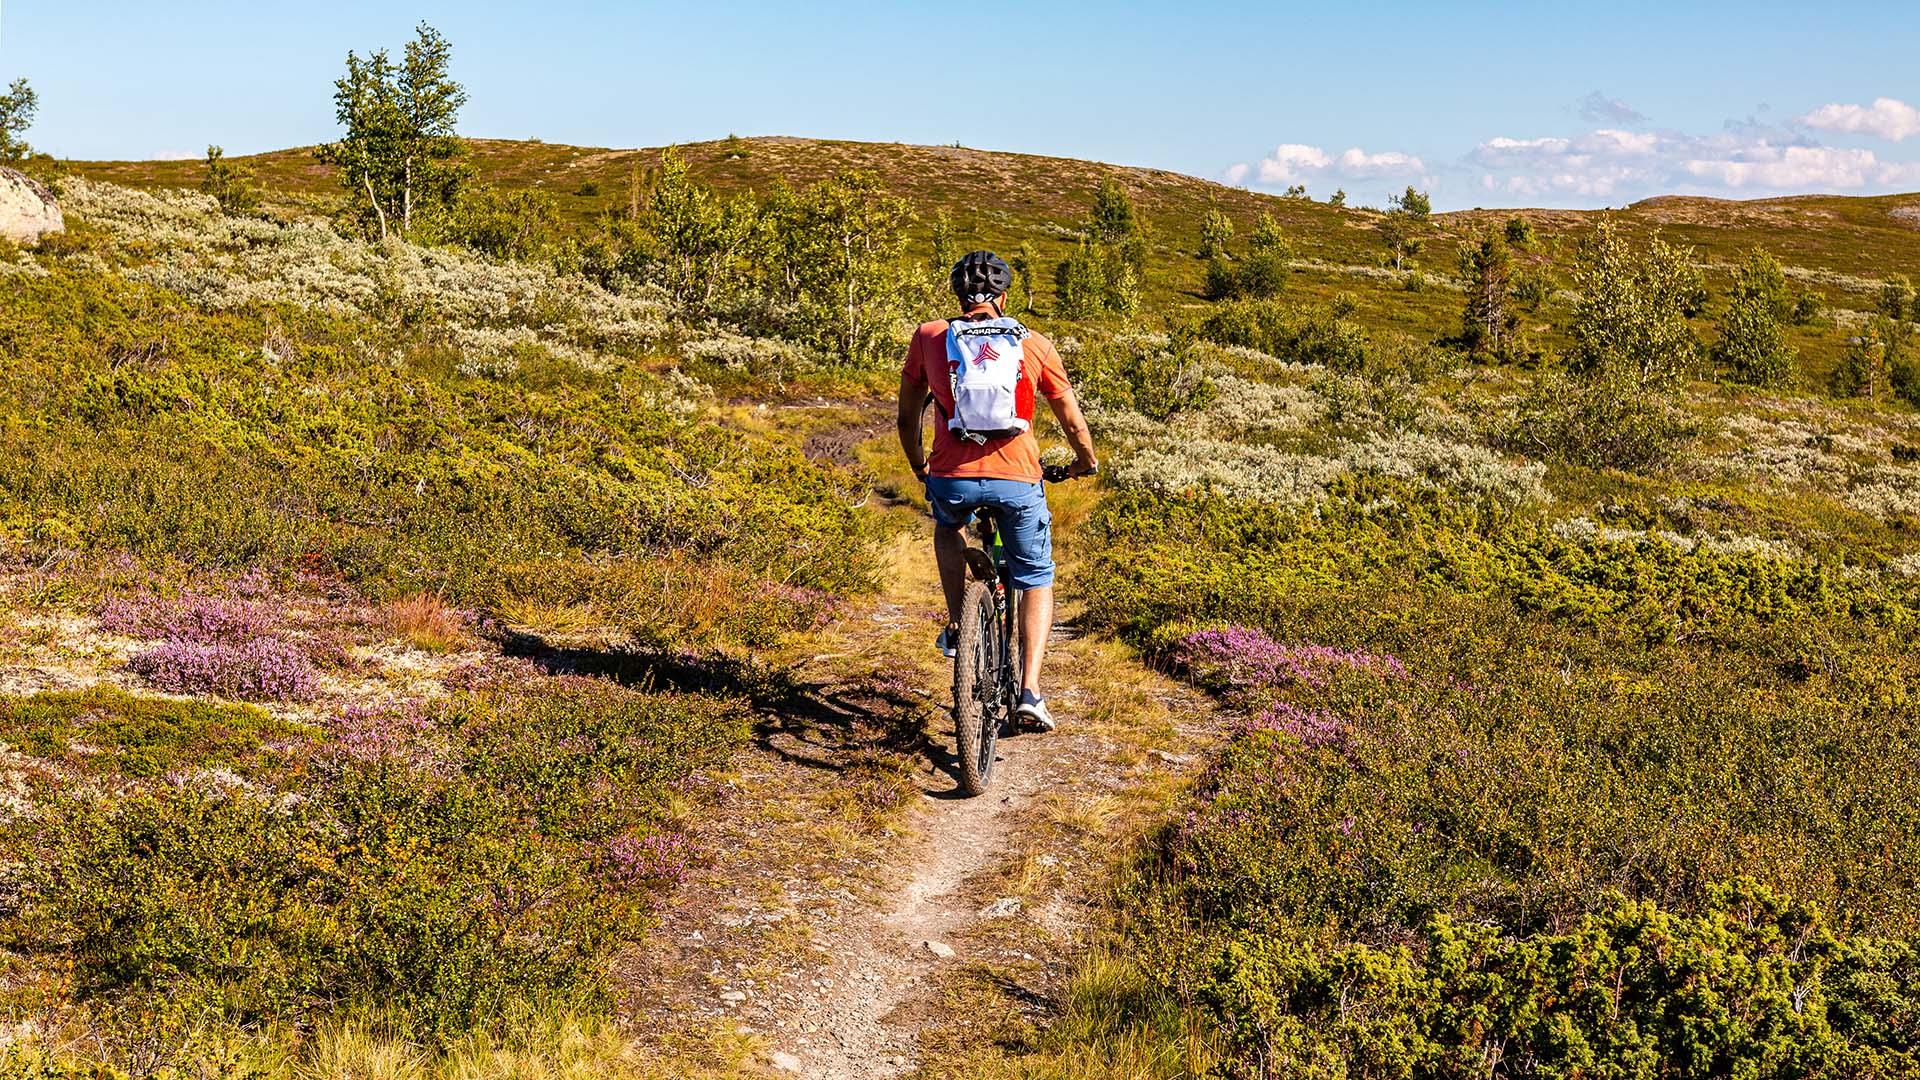 Ein Radfahrer auf einem Singletrail durch blühende Bergheidelandschaft.